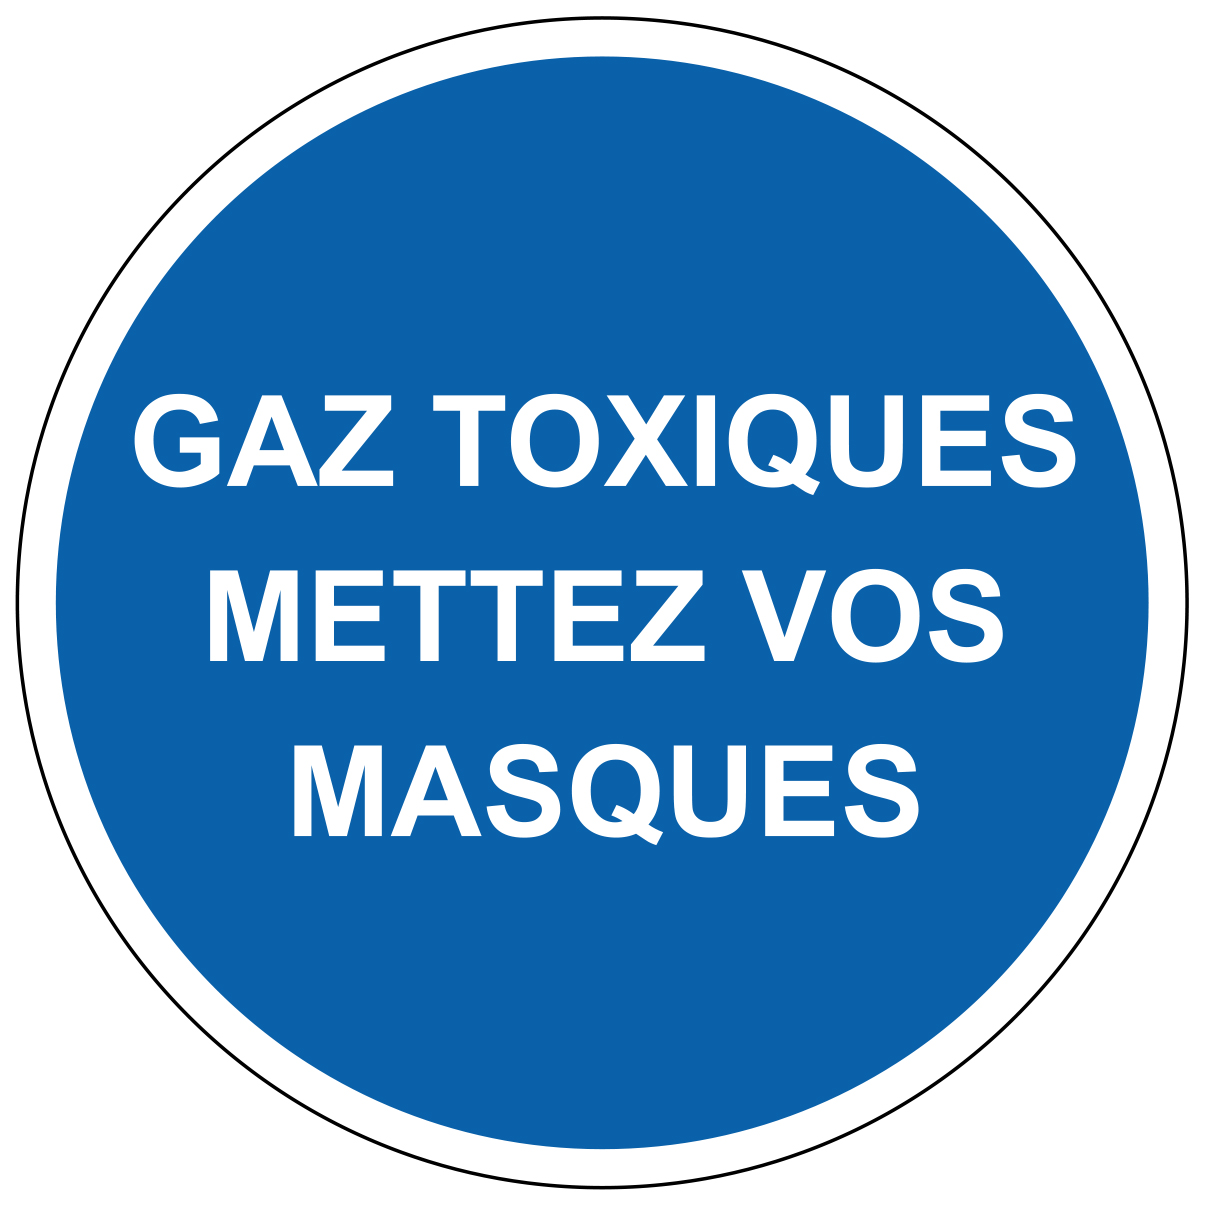 Gaz toxiques mettez vos masques - M316 - étiquettes et panneaux d'obligation et de consigne